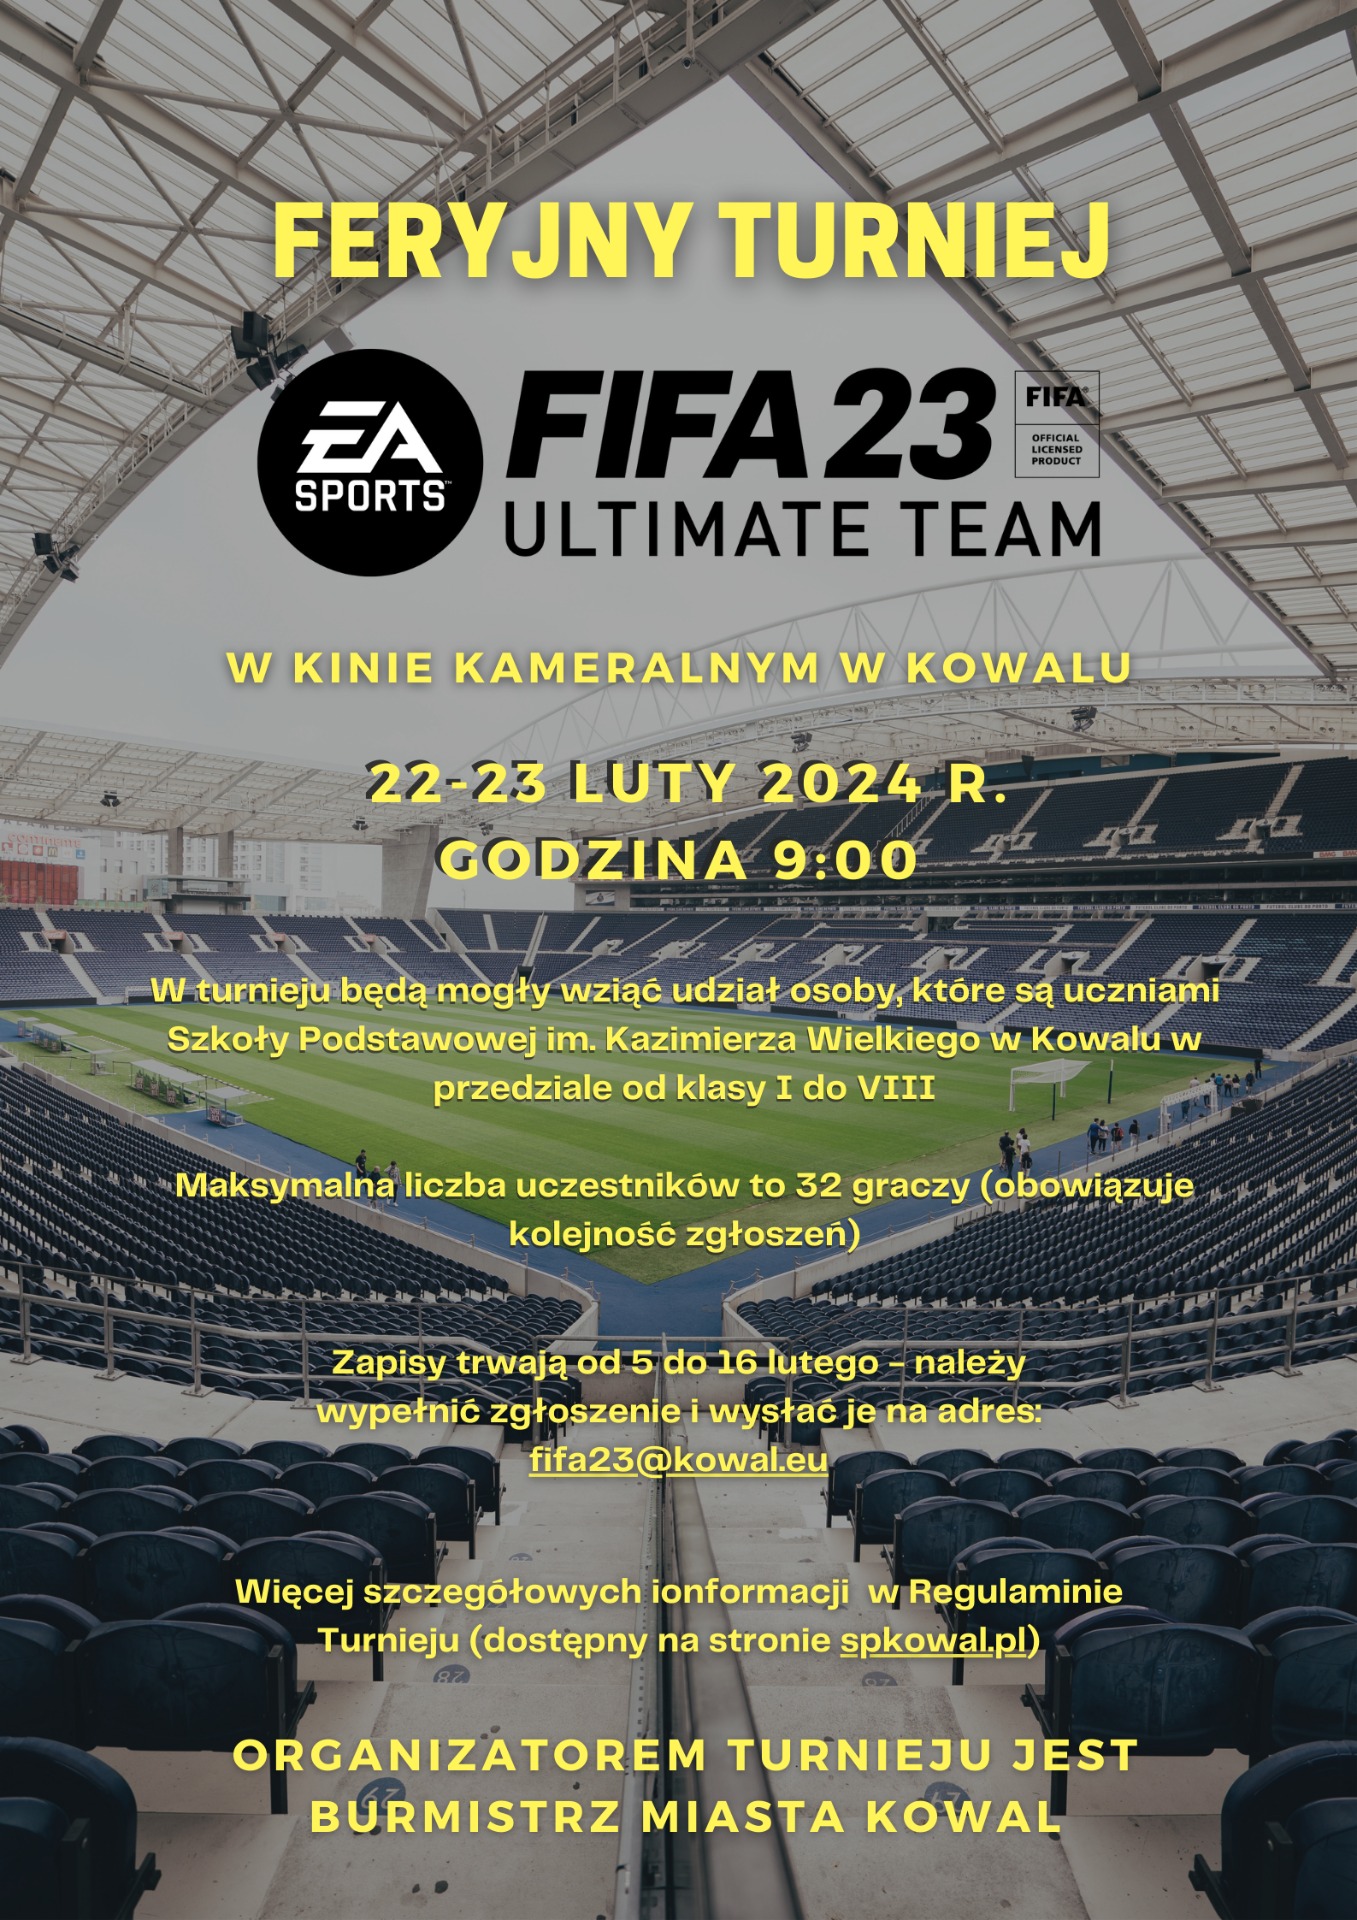 Feryjny Turniej FIFA 23 w Kowalu - Obrazek 1